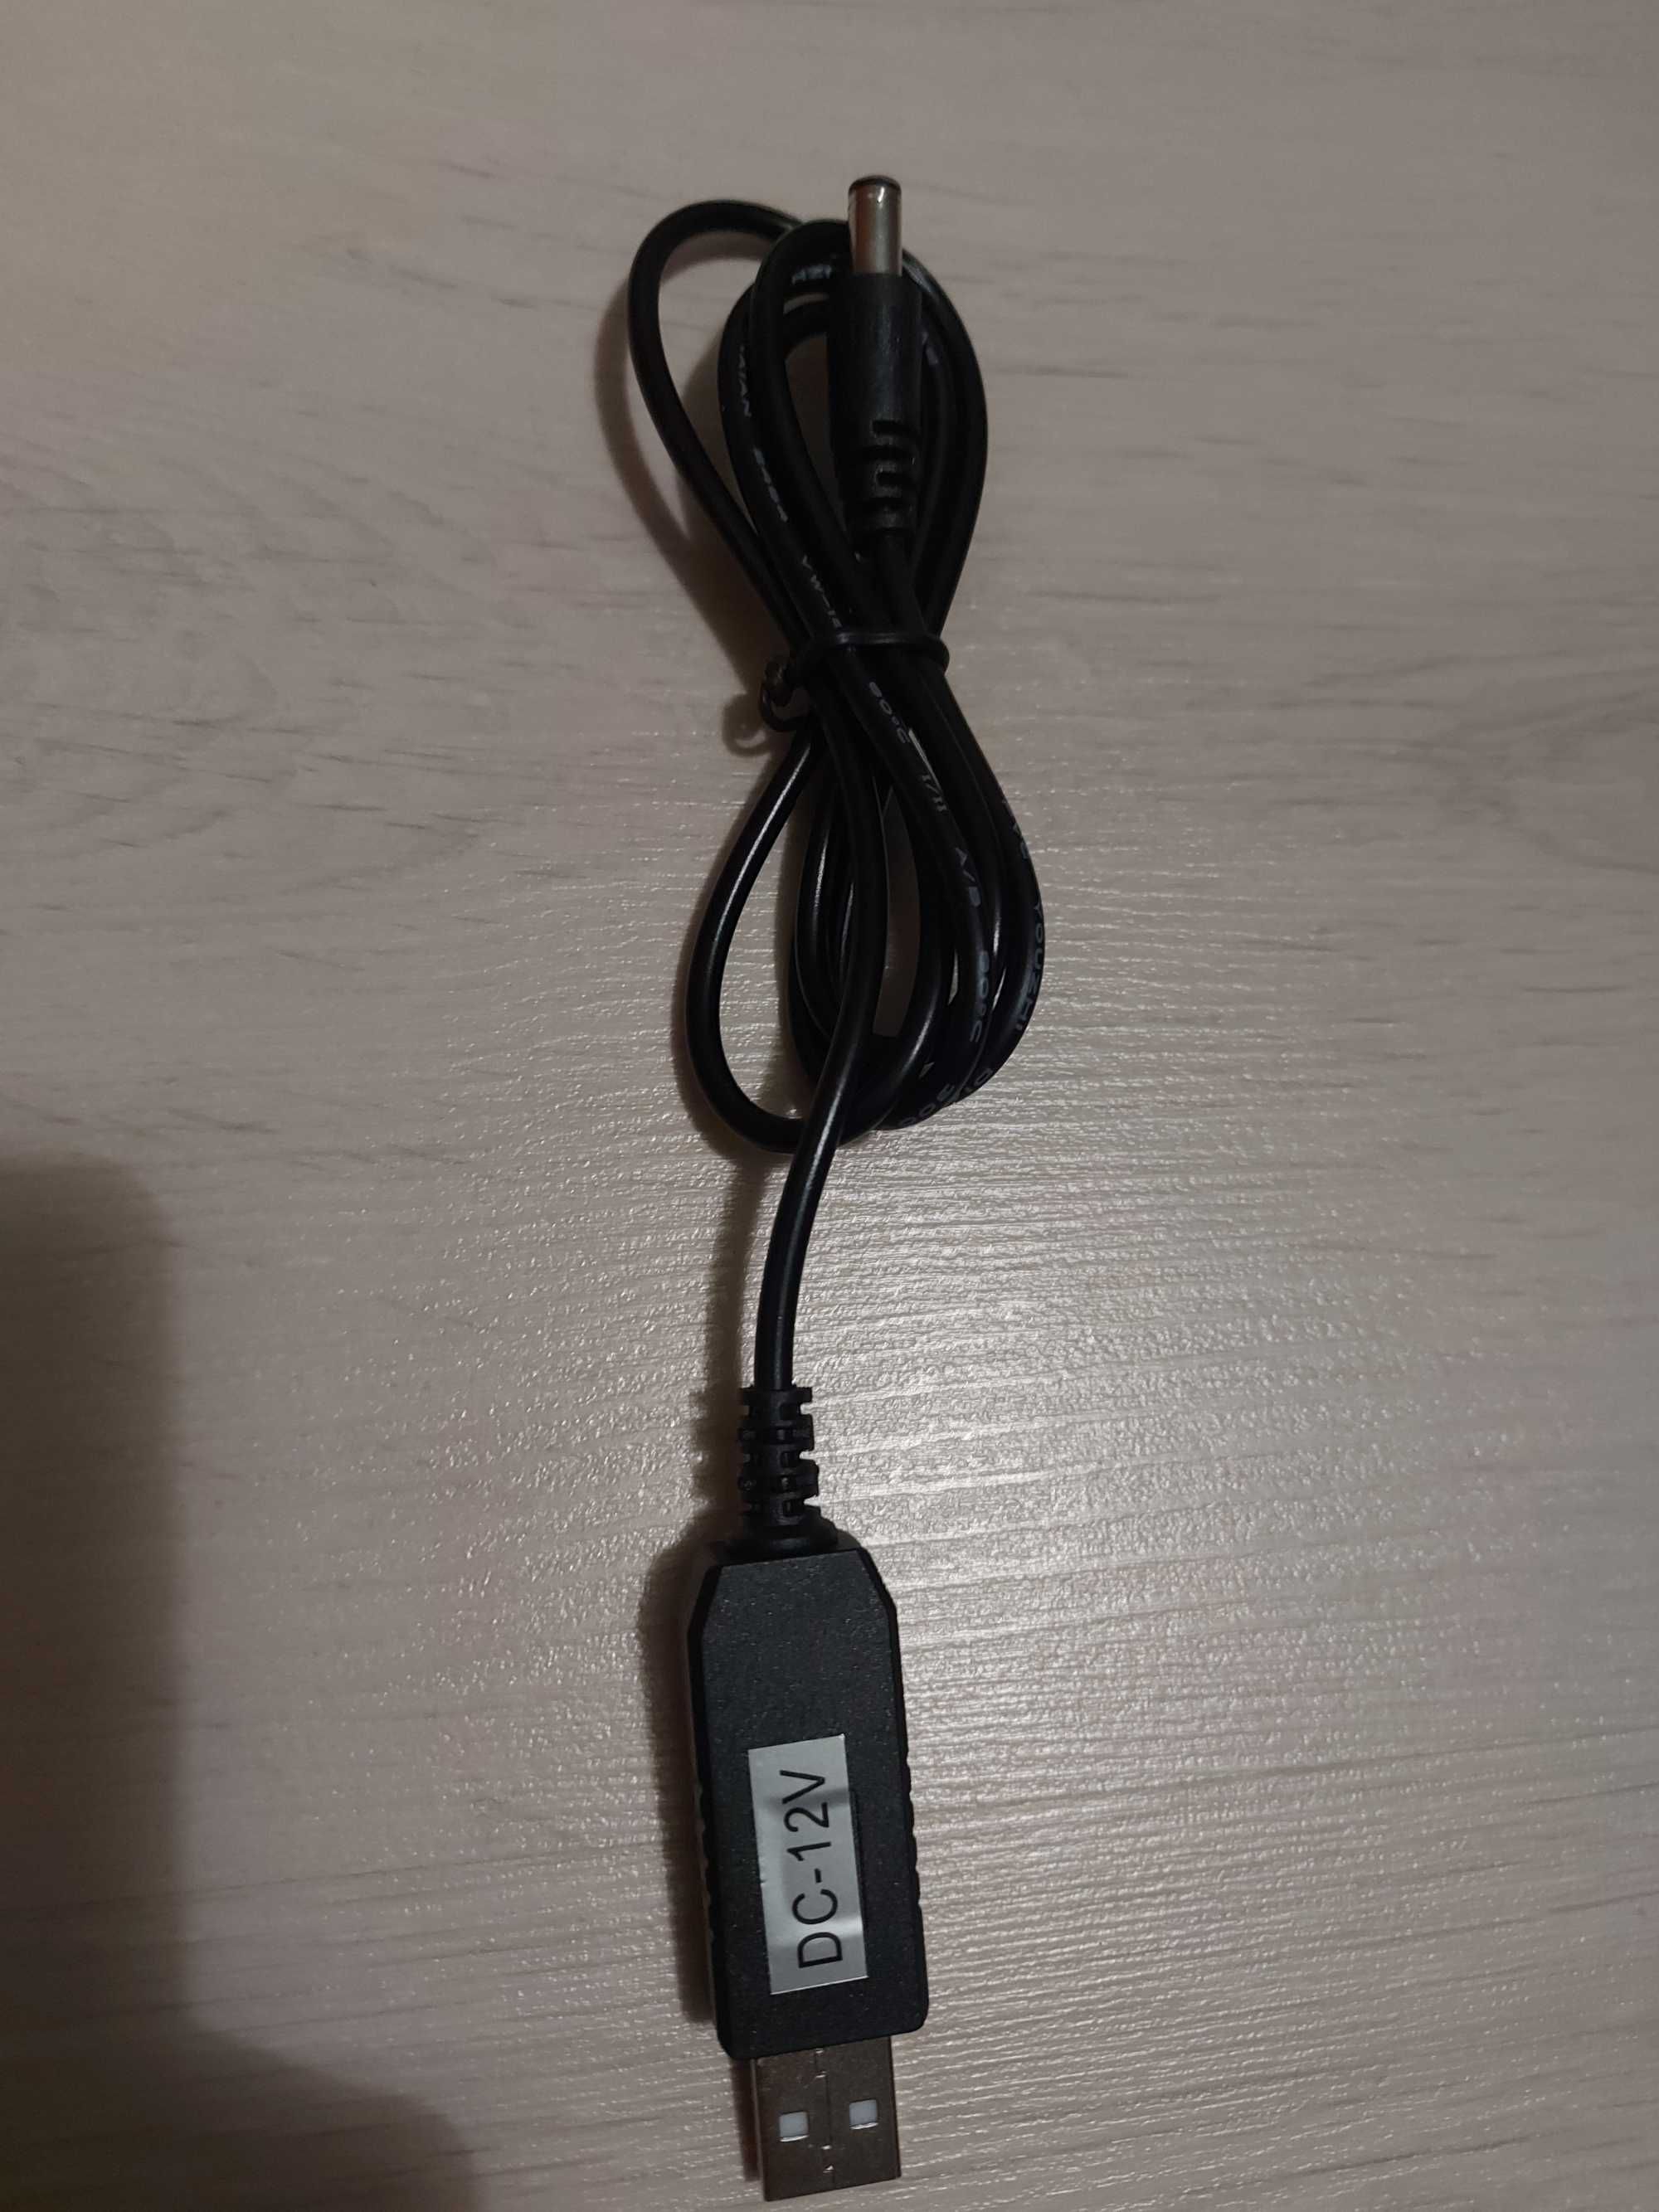 DC Кабель для роутера USB від павербанку 5,5х2,1 мм (1 м) 12V